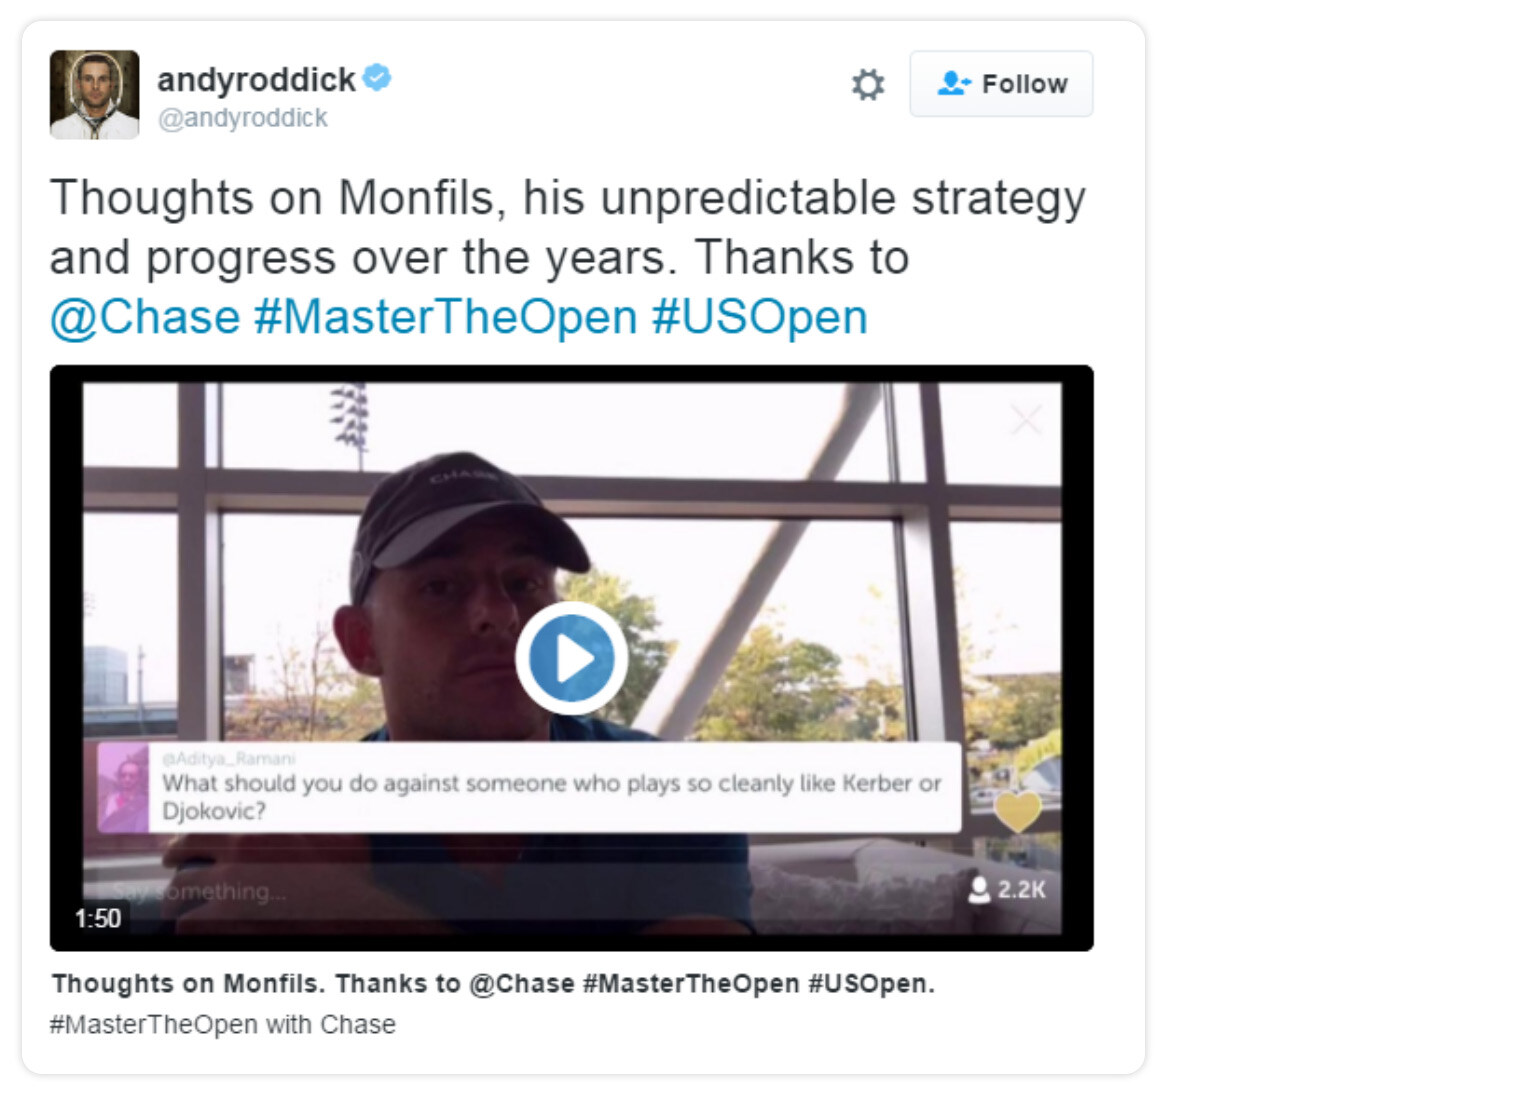 Andyroddicks twitter status - thoughts on monfils